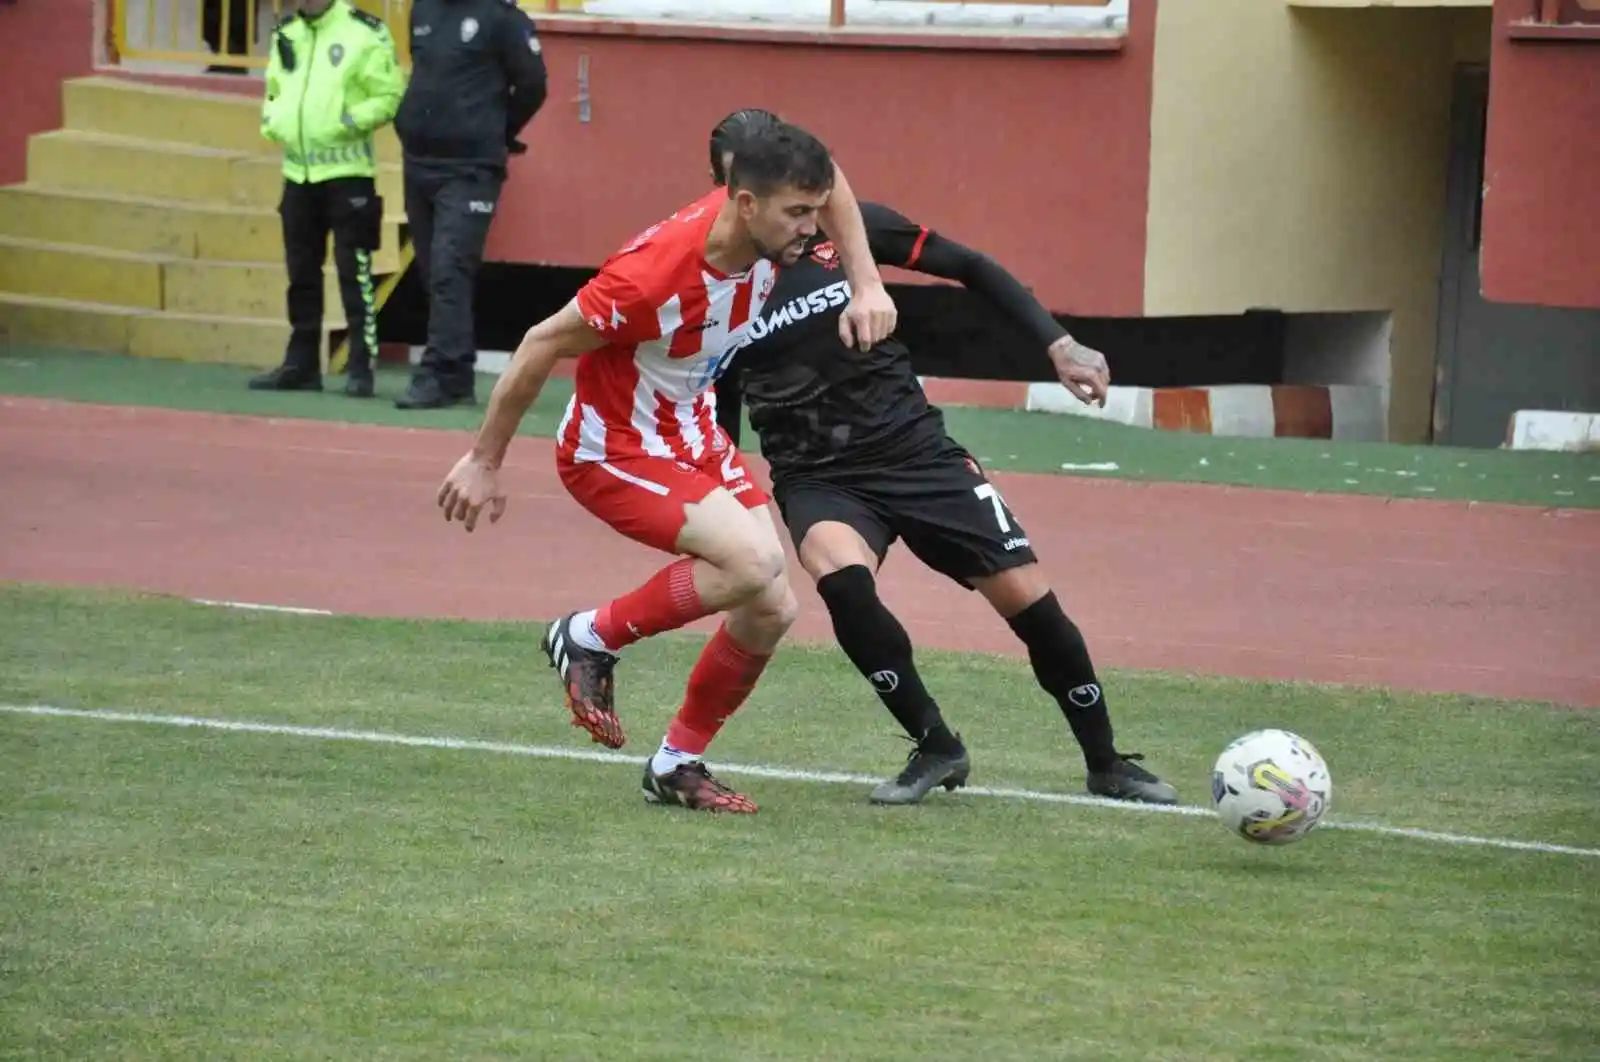 TFF 3. Lig: Gümüşhane Sportif Faaliyetler: 0 - Kınay Bulvarspor: 0
